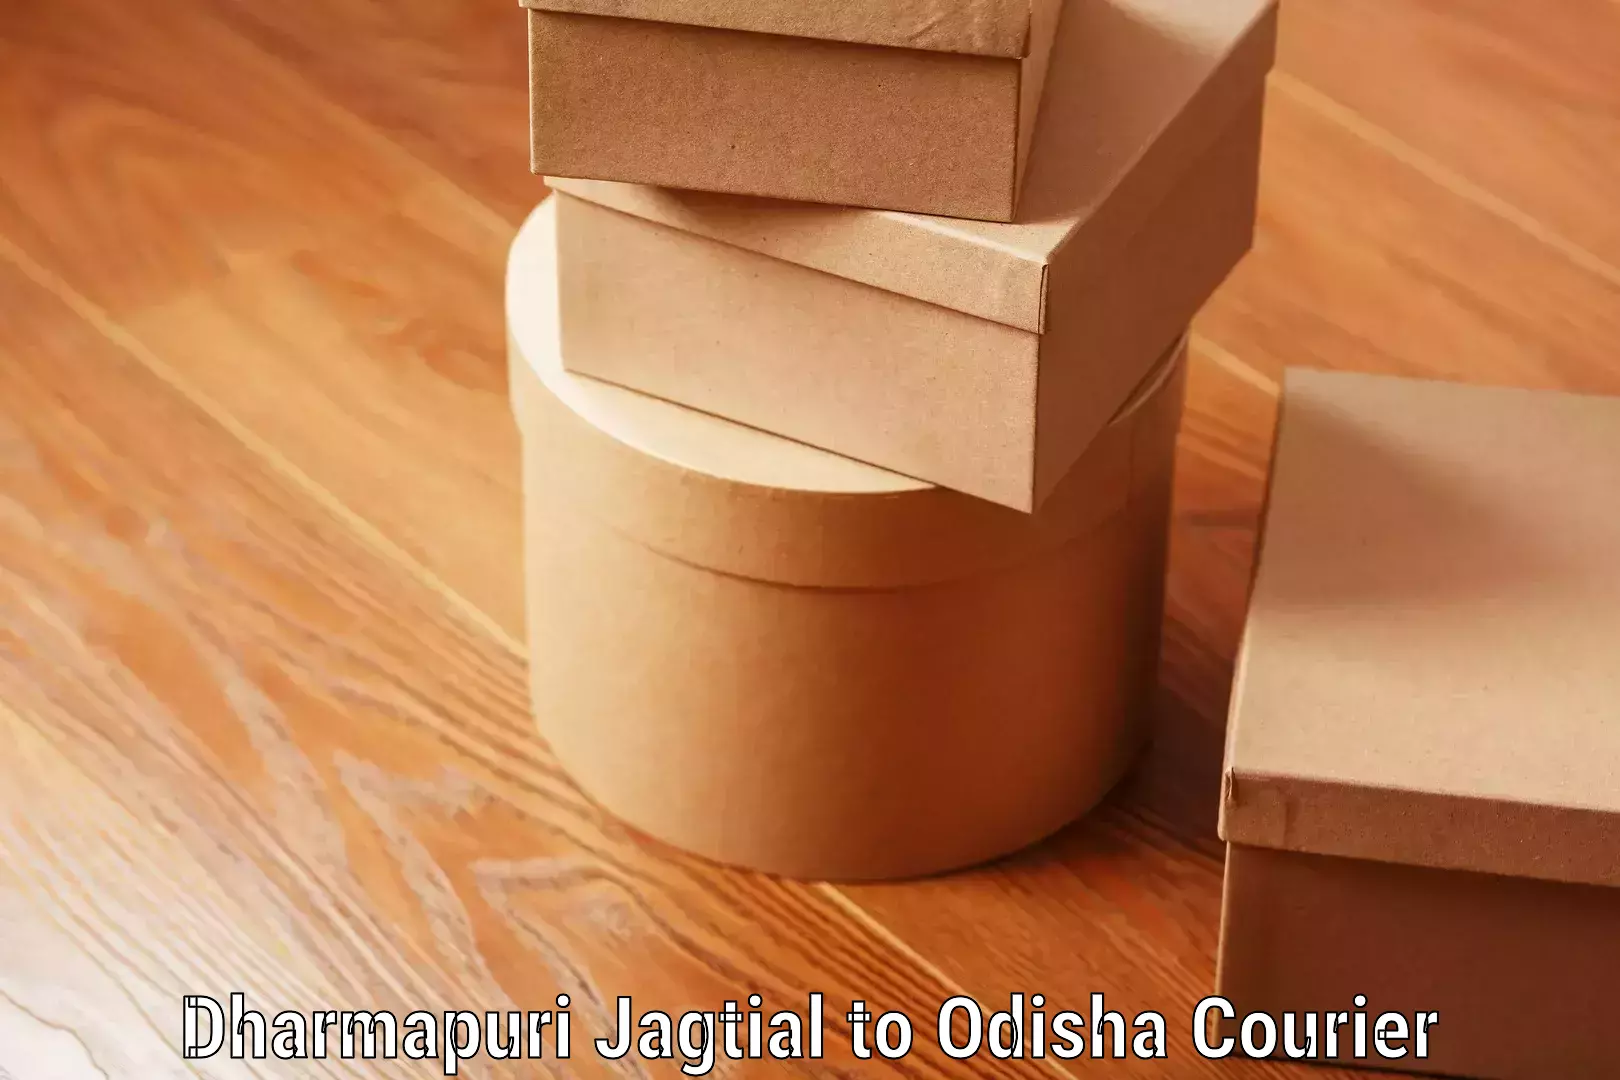 Luggage transport service Dharmapuri Jagtial to Odisha